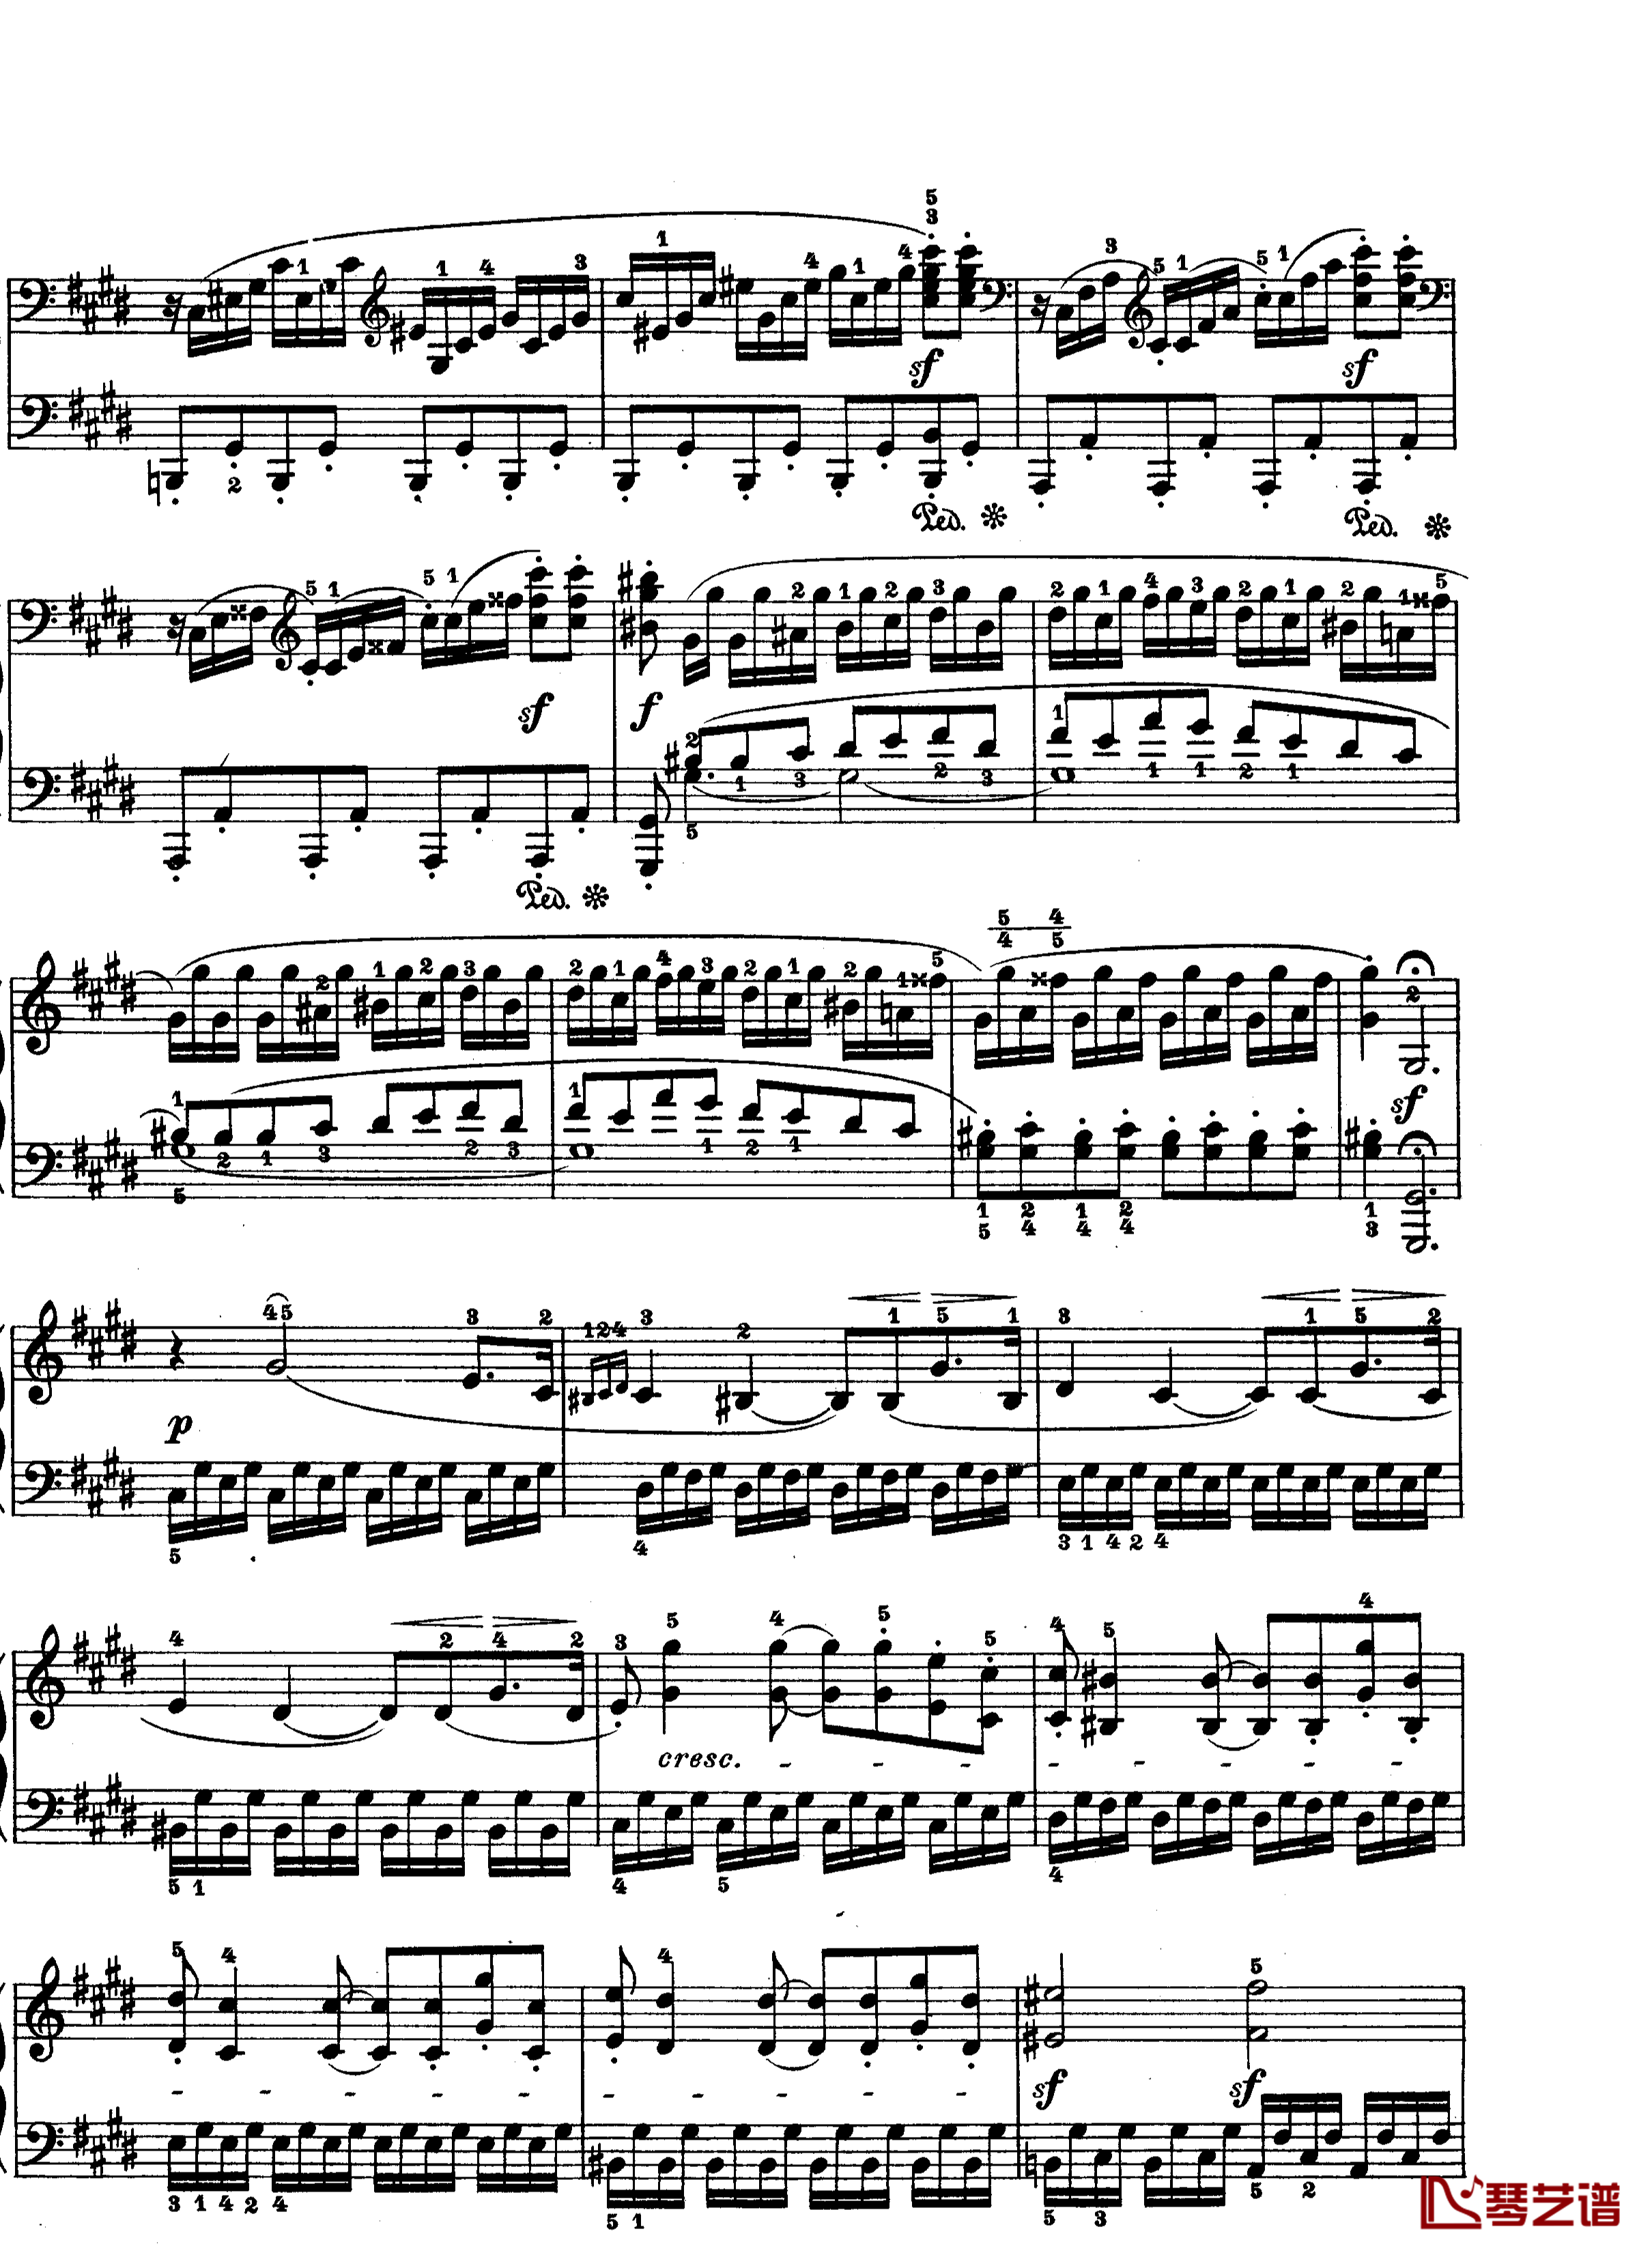 月光曲钢琴谱-第十四钢琴奏鸣曲-Op.27 No.2-贝多芬-beethoven10